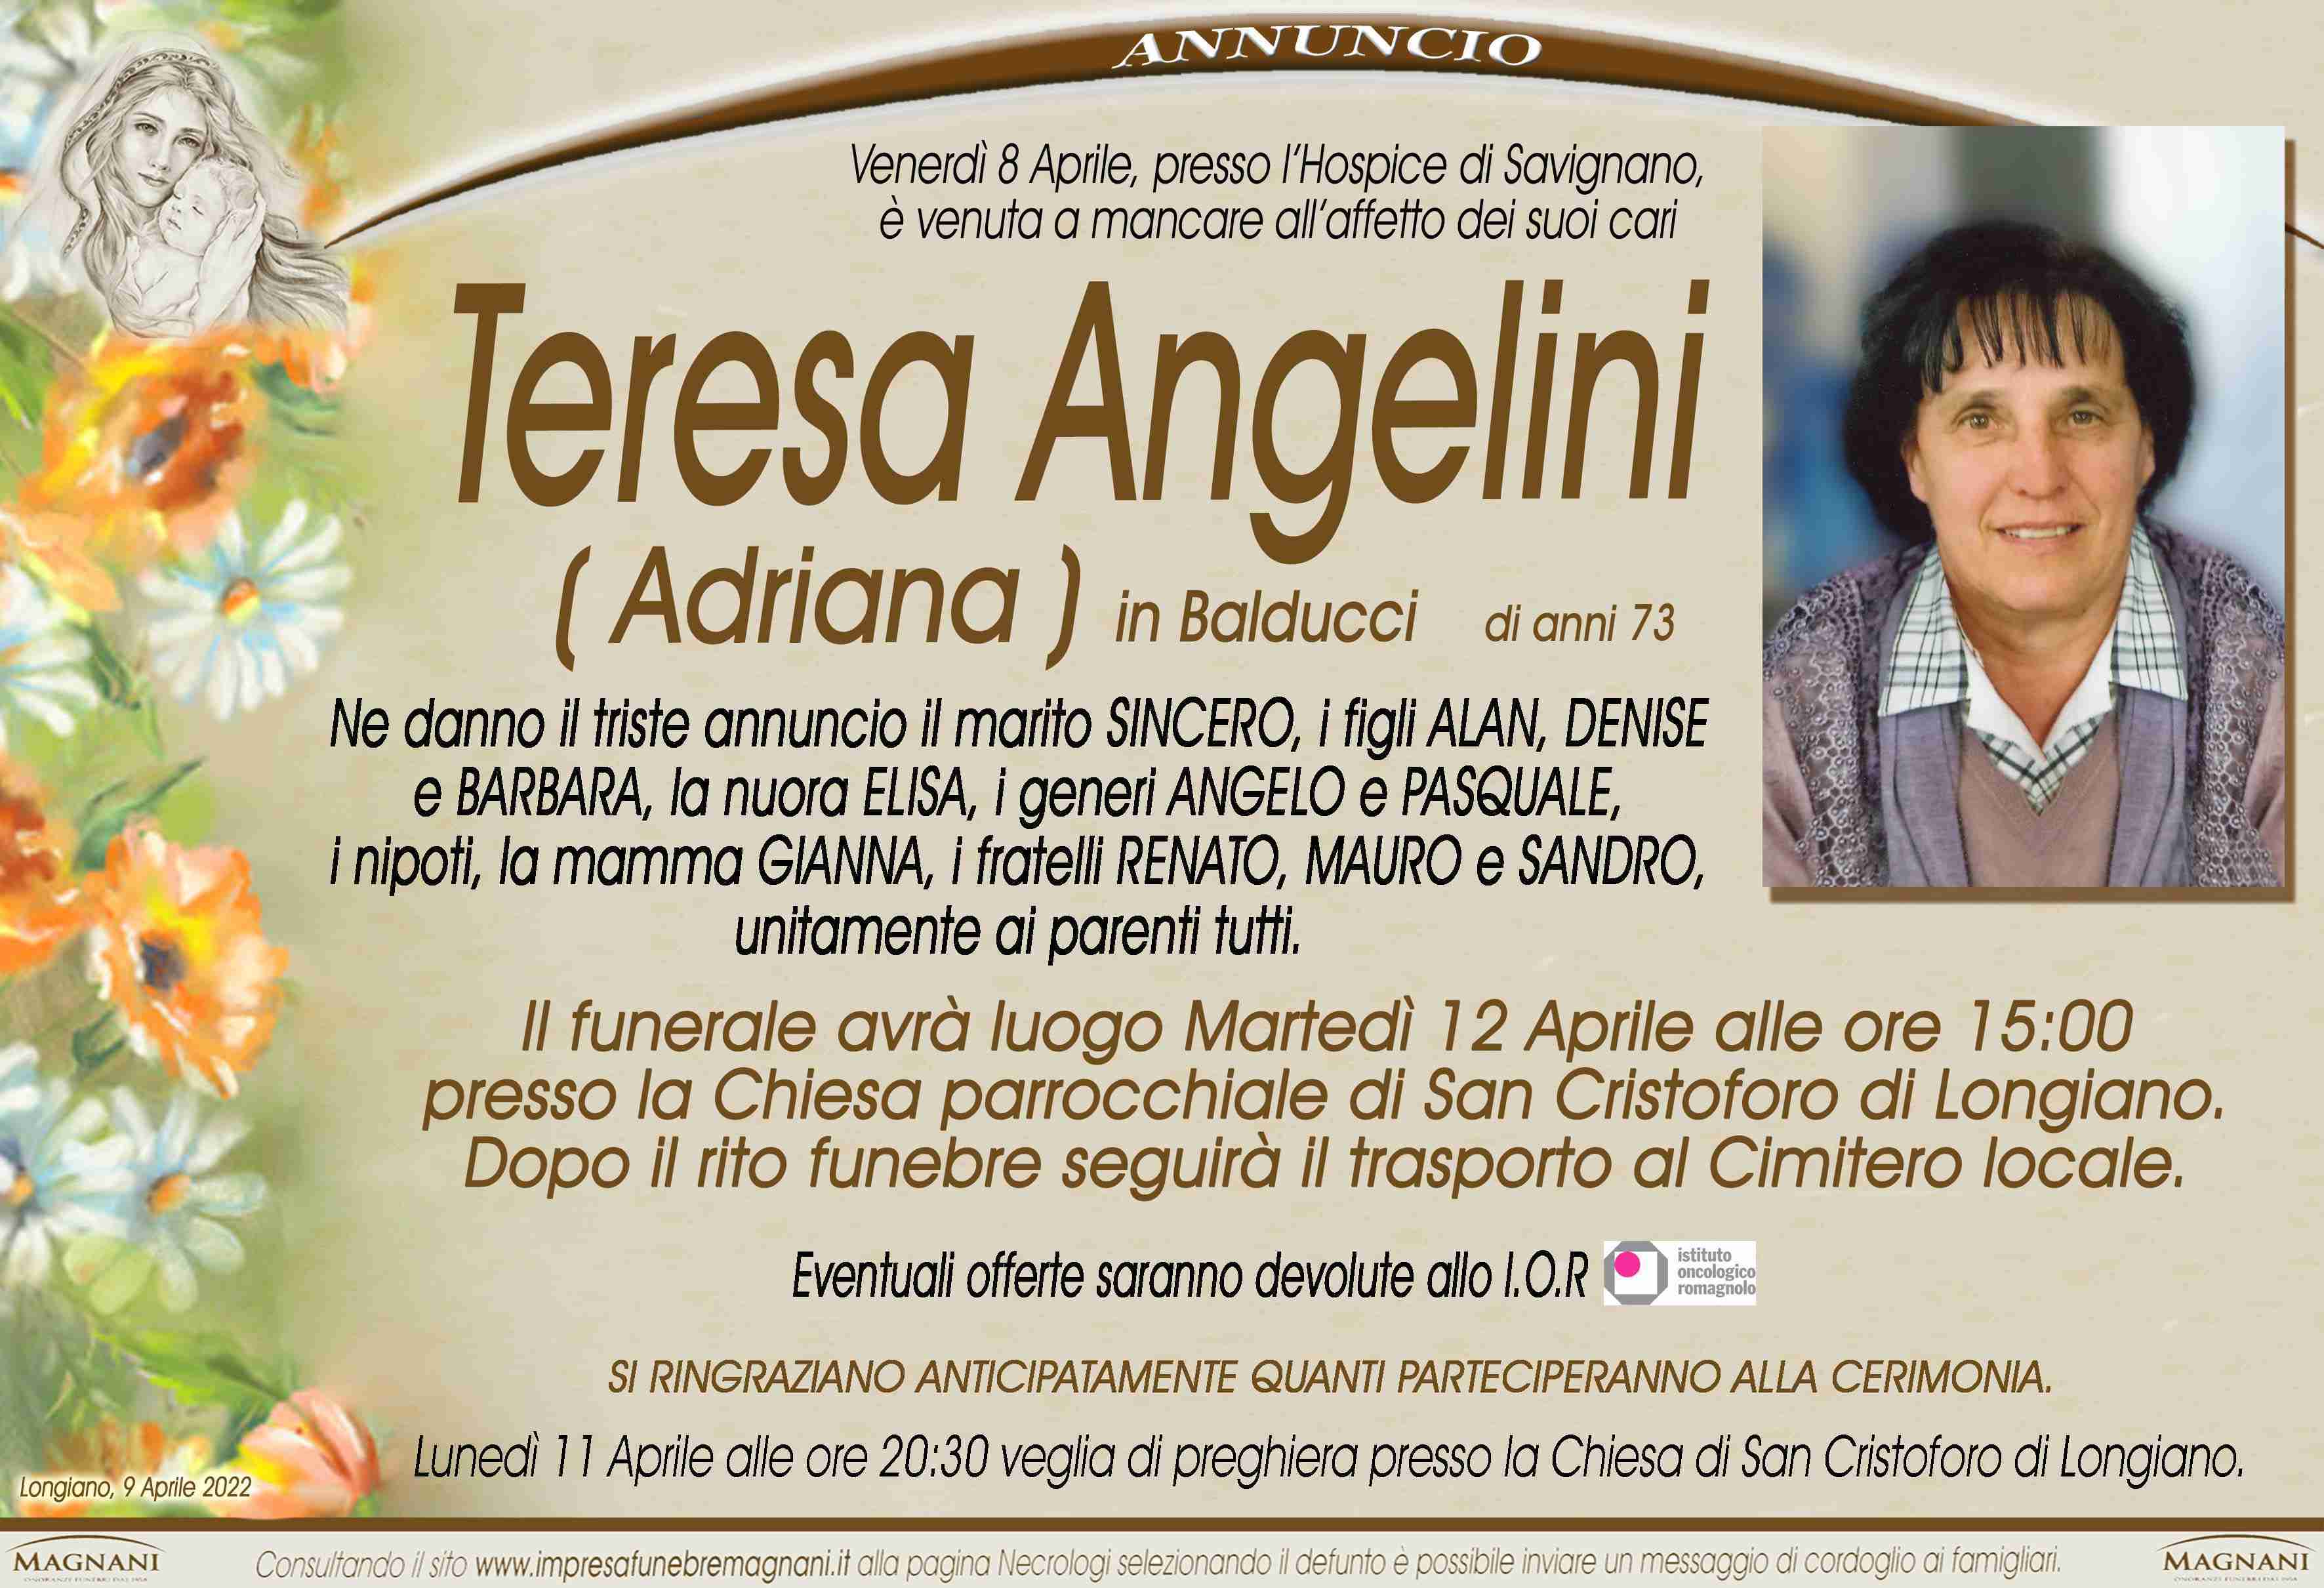 Teresa Angelini